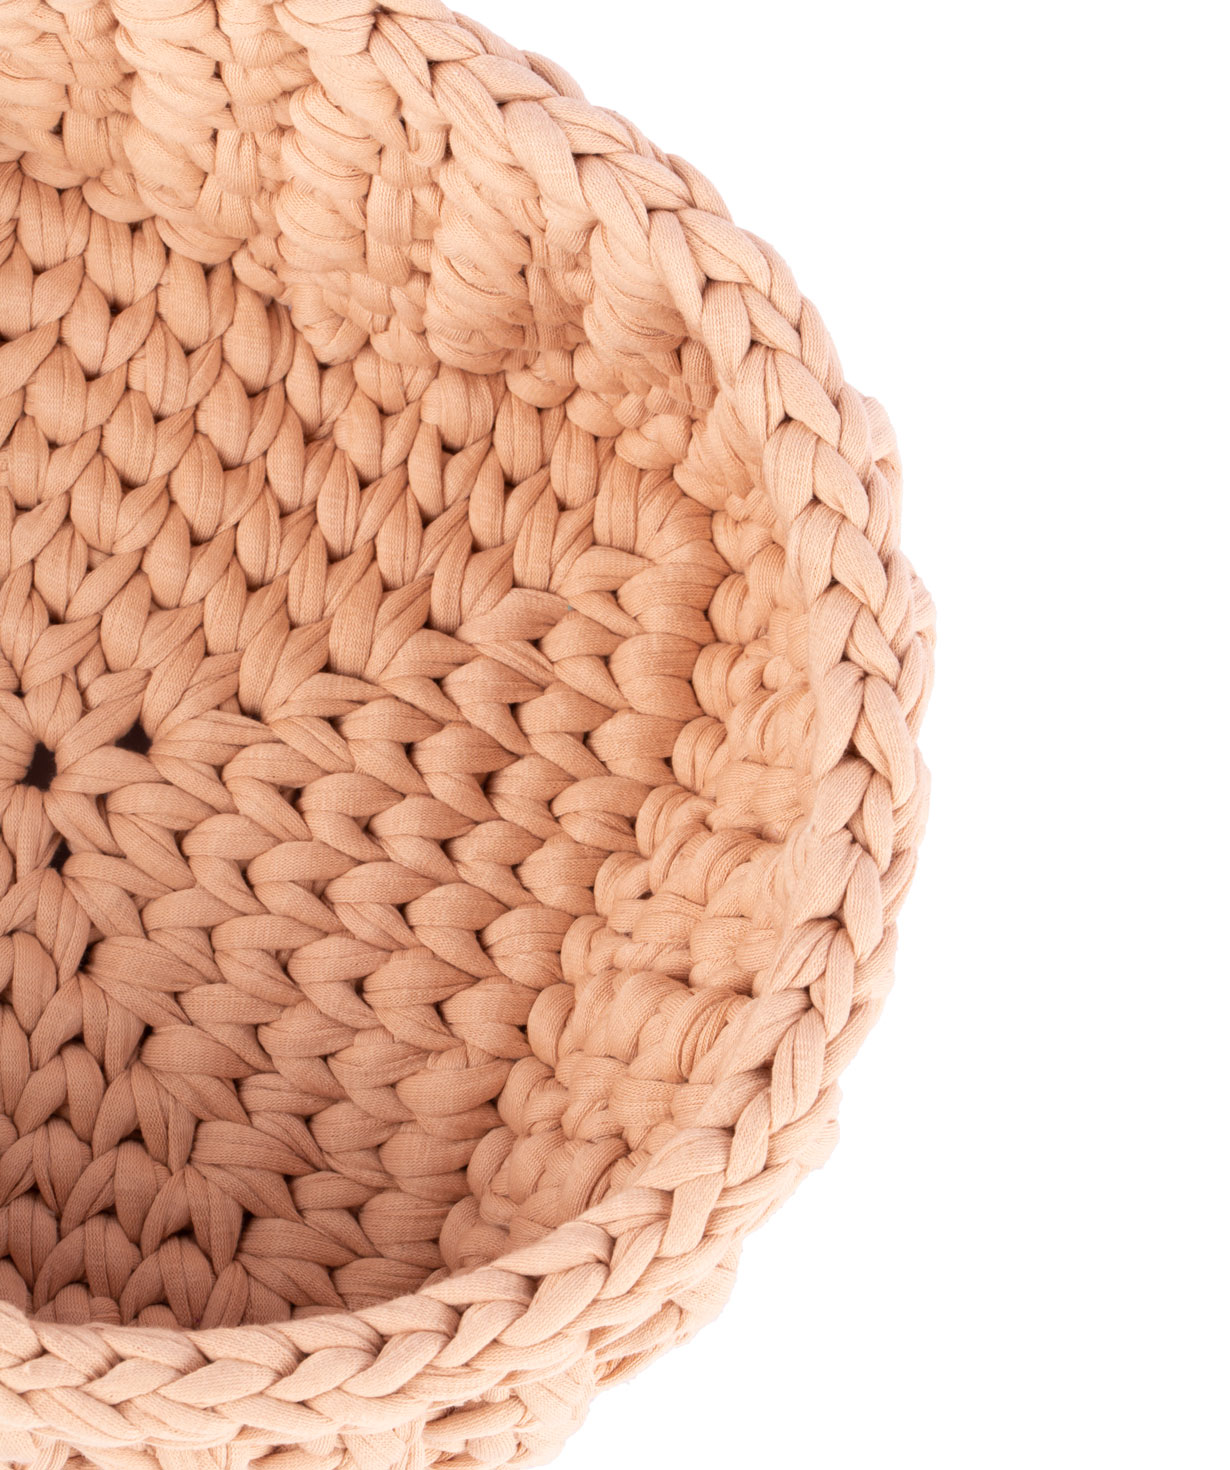 Basket `Ro Handmade` handmade, cotton №5